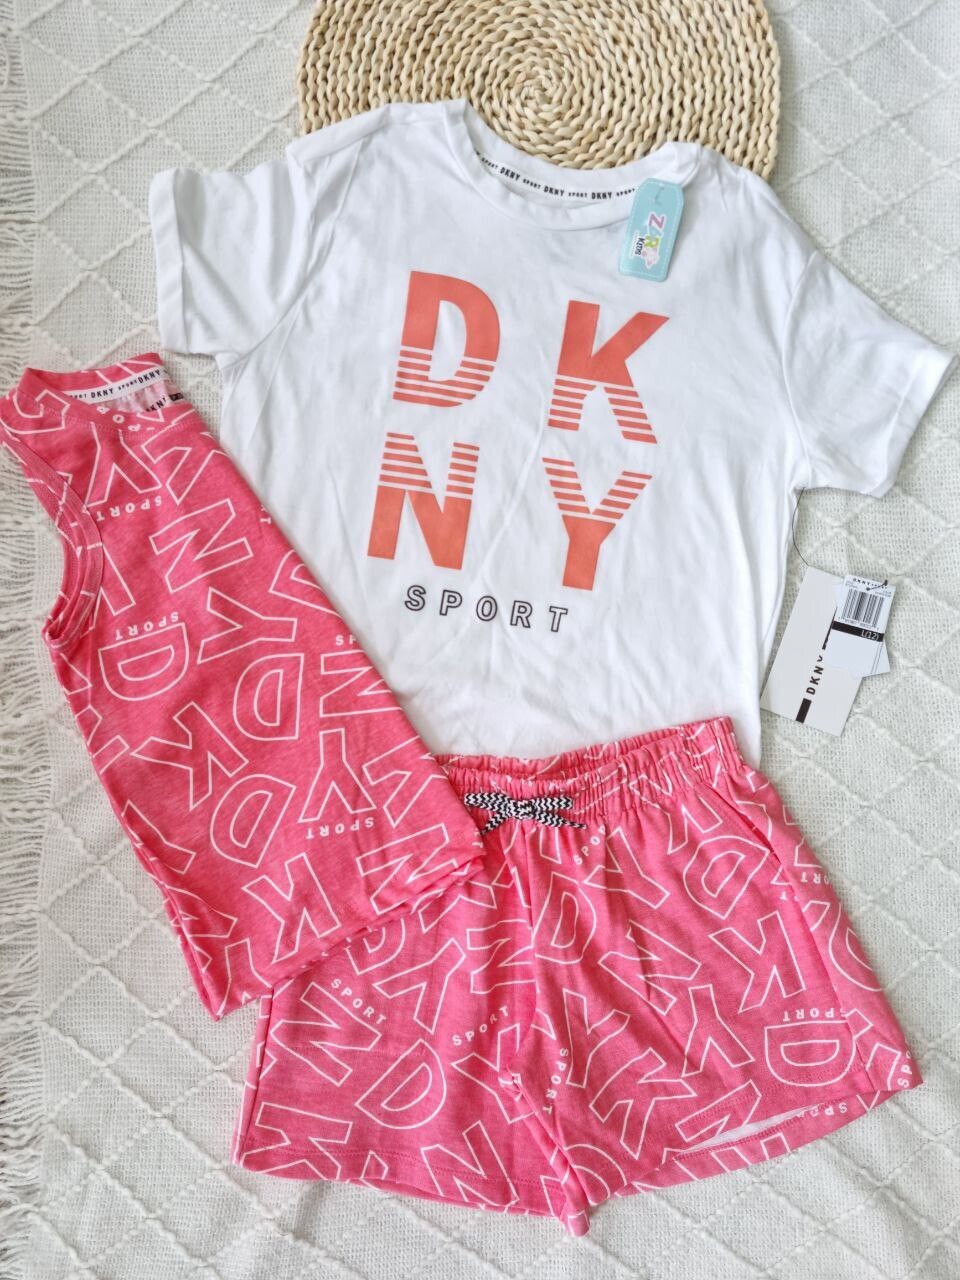 Set DKNY, camiseta blanca + blusa coral + short coral, 12 años